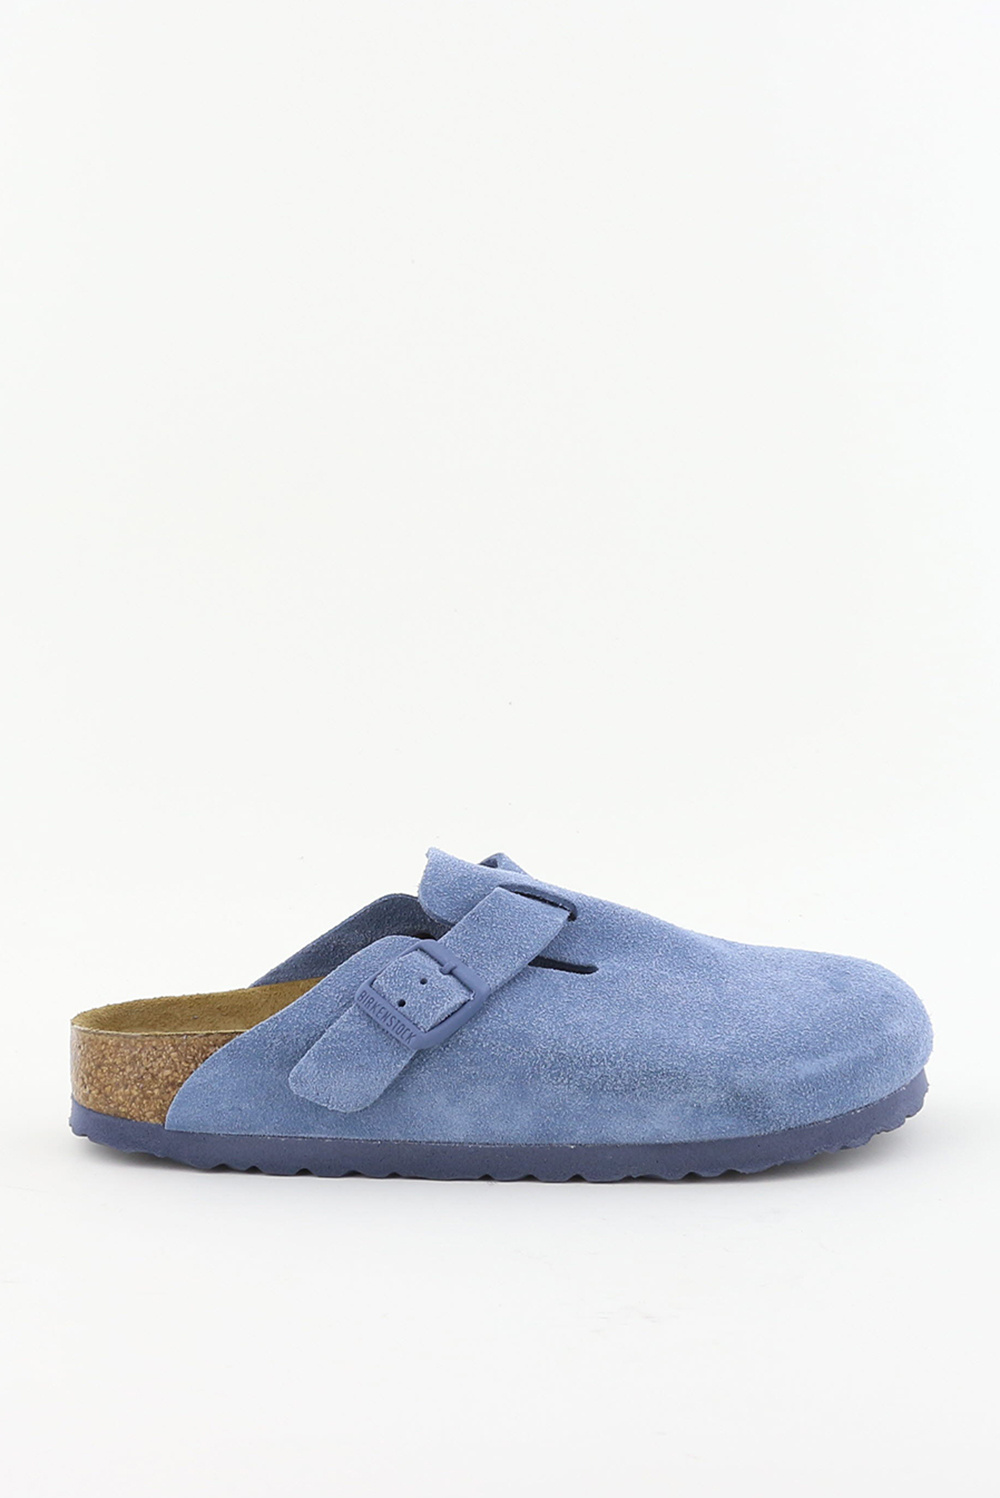 Birkenstock loafers Boston 1026769 blauw